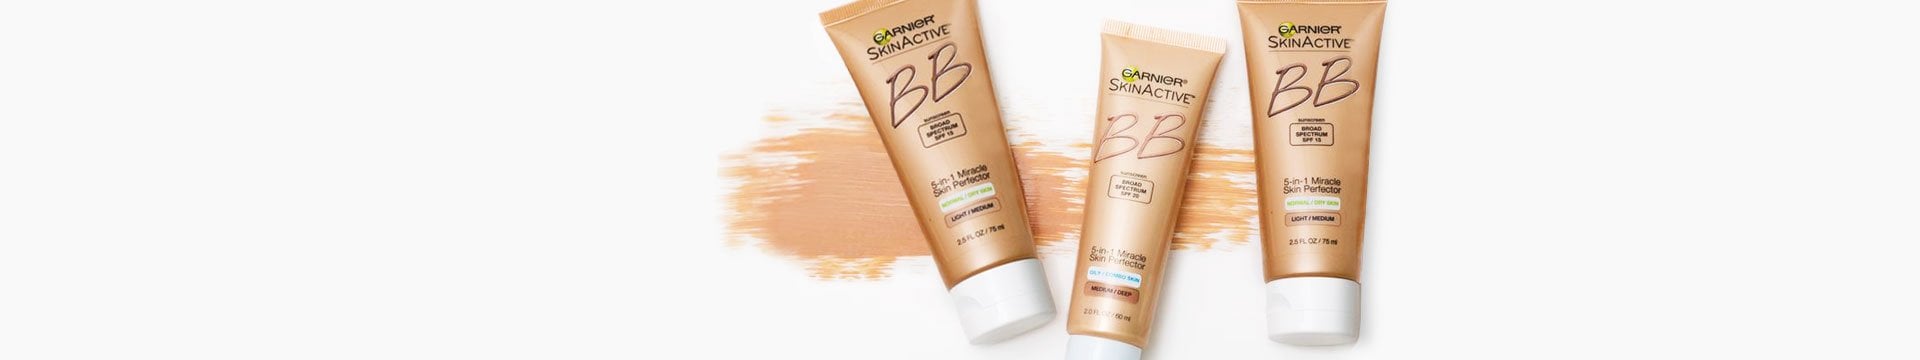 BB Cream - Smooth, Brighten, and Even Skin Tone - Garnier